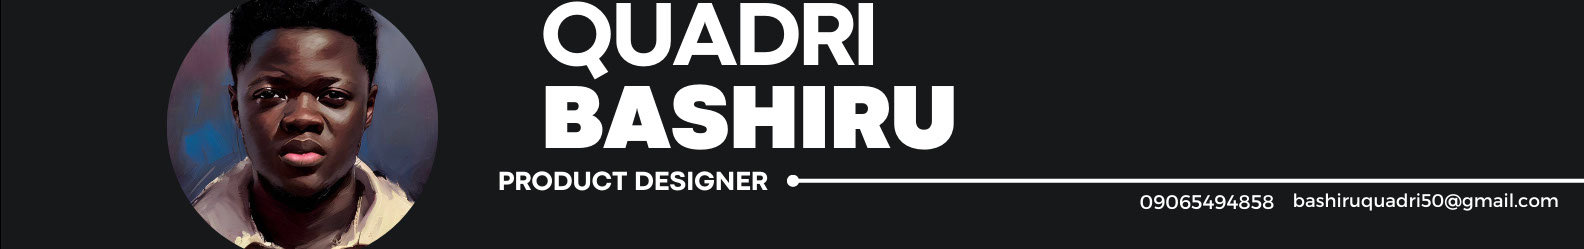 Quadri Bashiru's profile banner